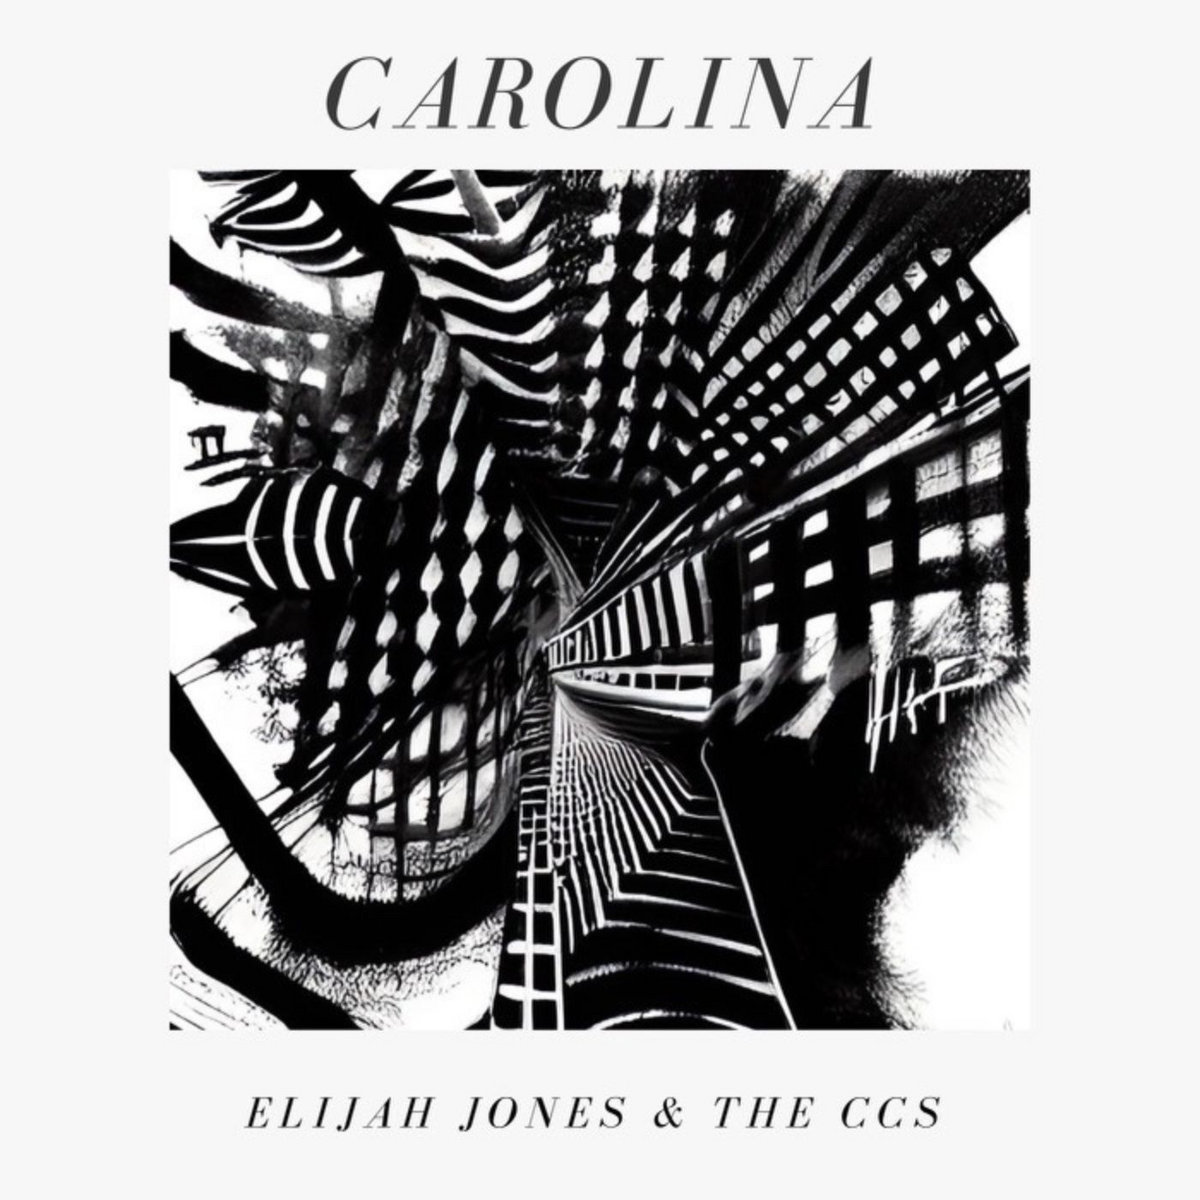 LISTEN: “Carolina” by Elijah Jones and the CCs